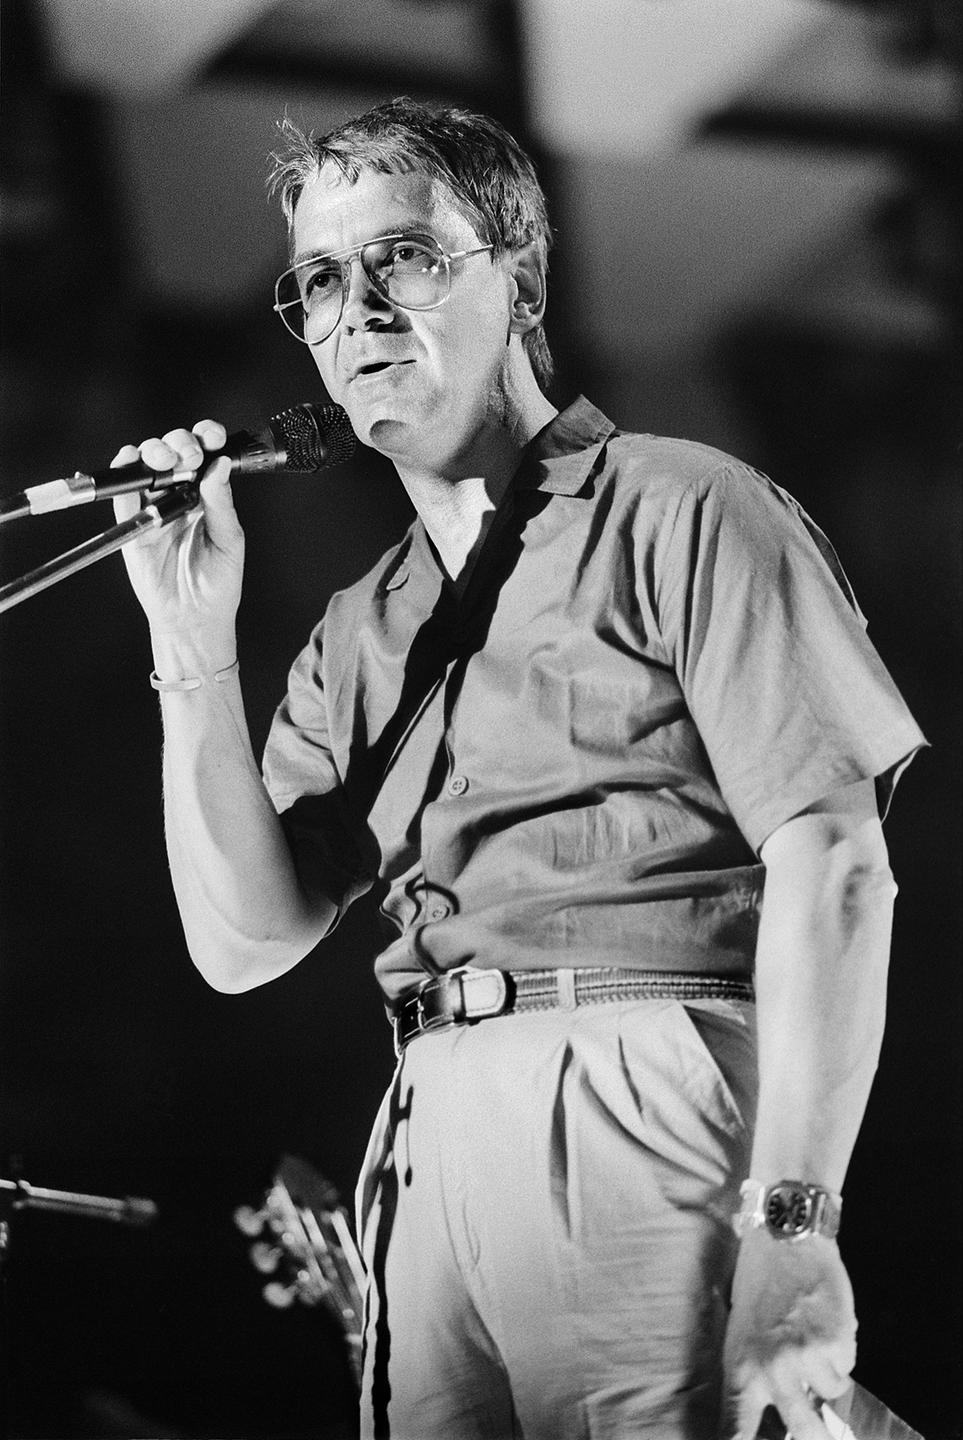 Claude Nobs 1985. Ein Mann steht auf einer Bühne und spricht in ein Mikrofon.